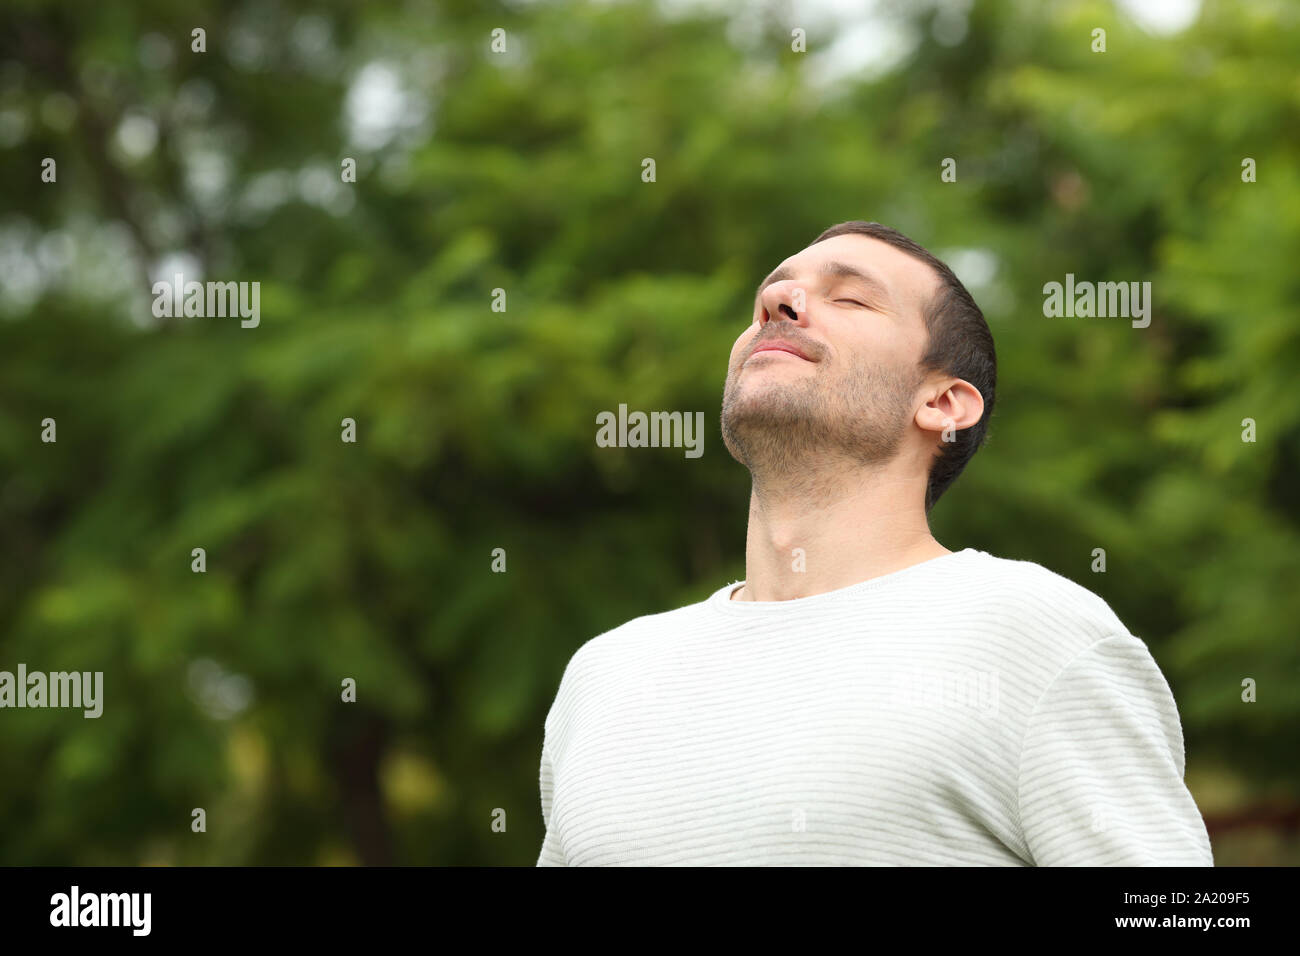 La respiration détendue homme adultes l'air frais dans une forêt avec des arbres verts dans l'arrière-plan Banque D'Images